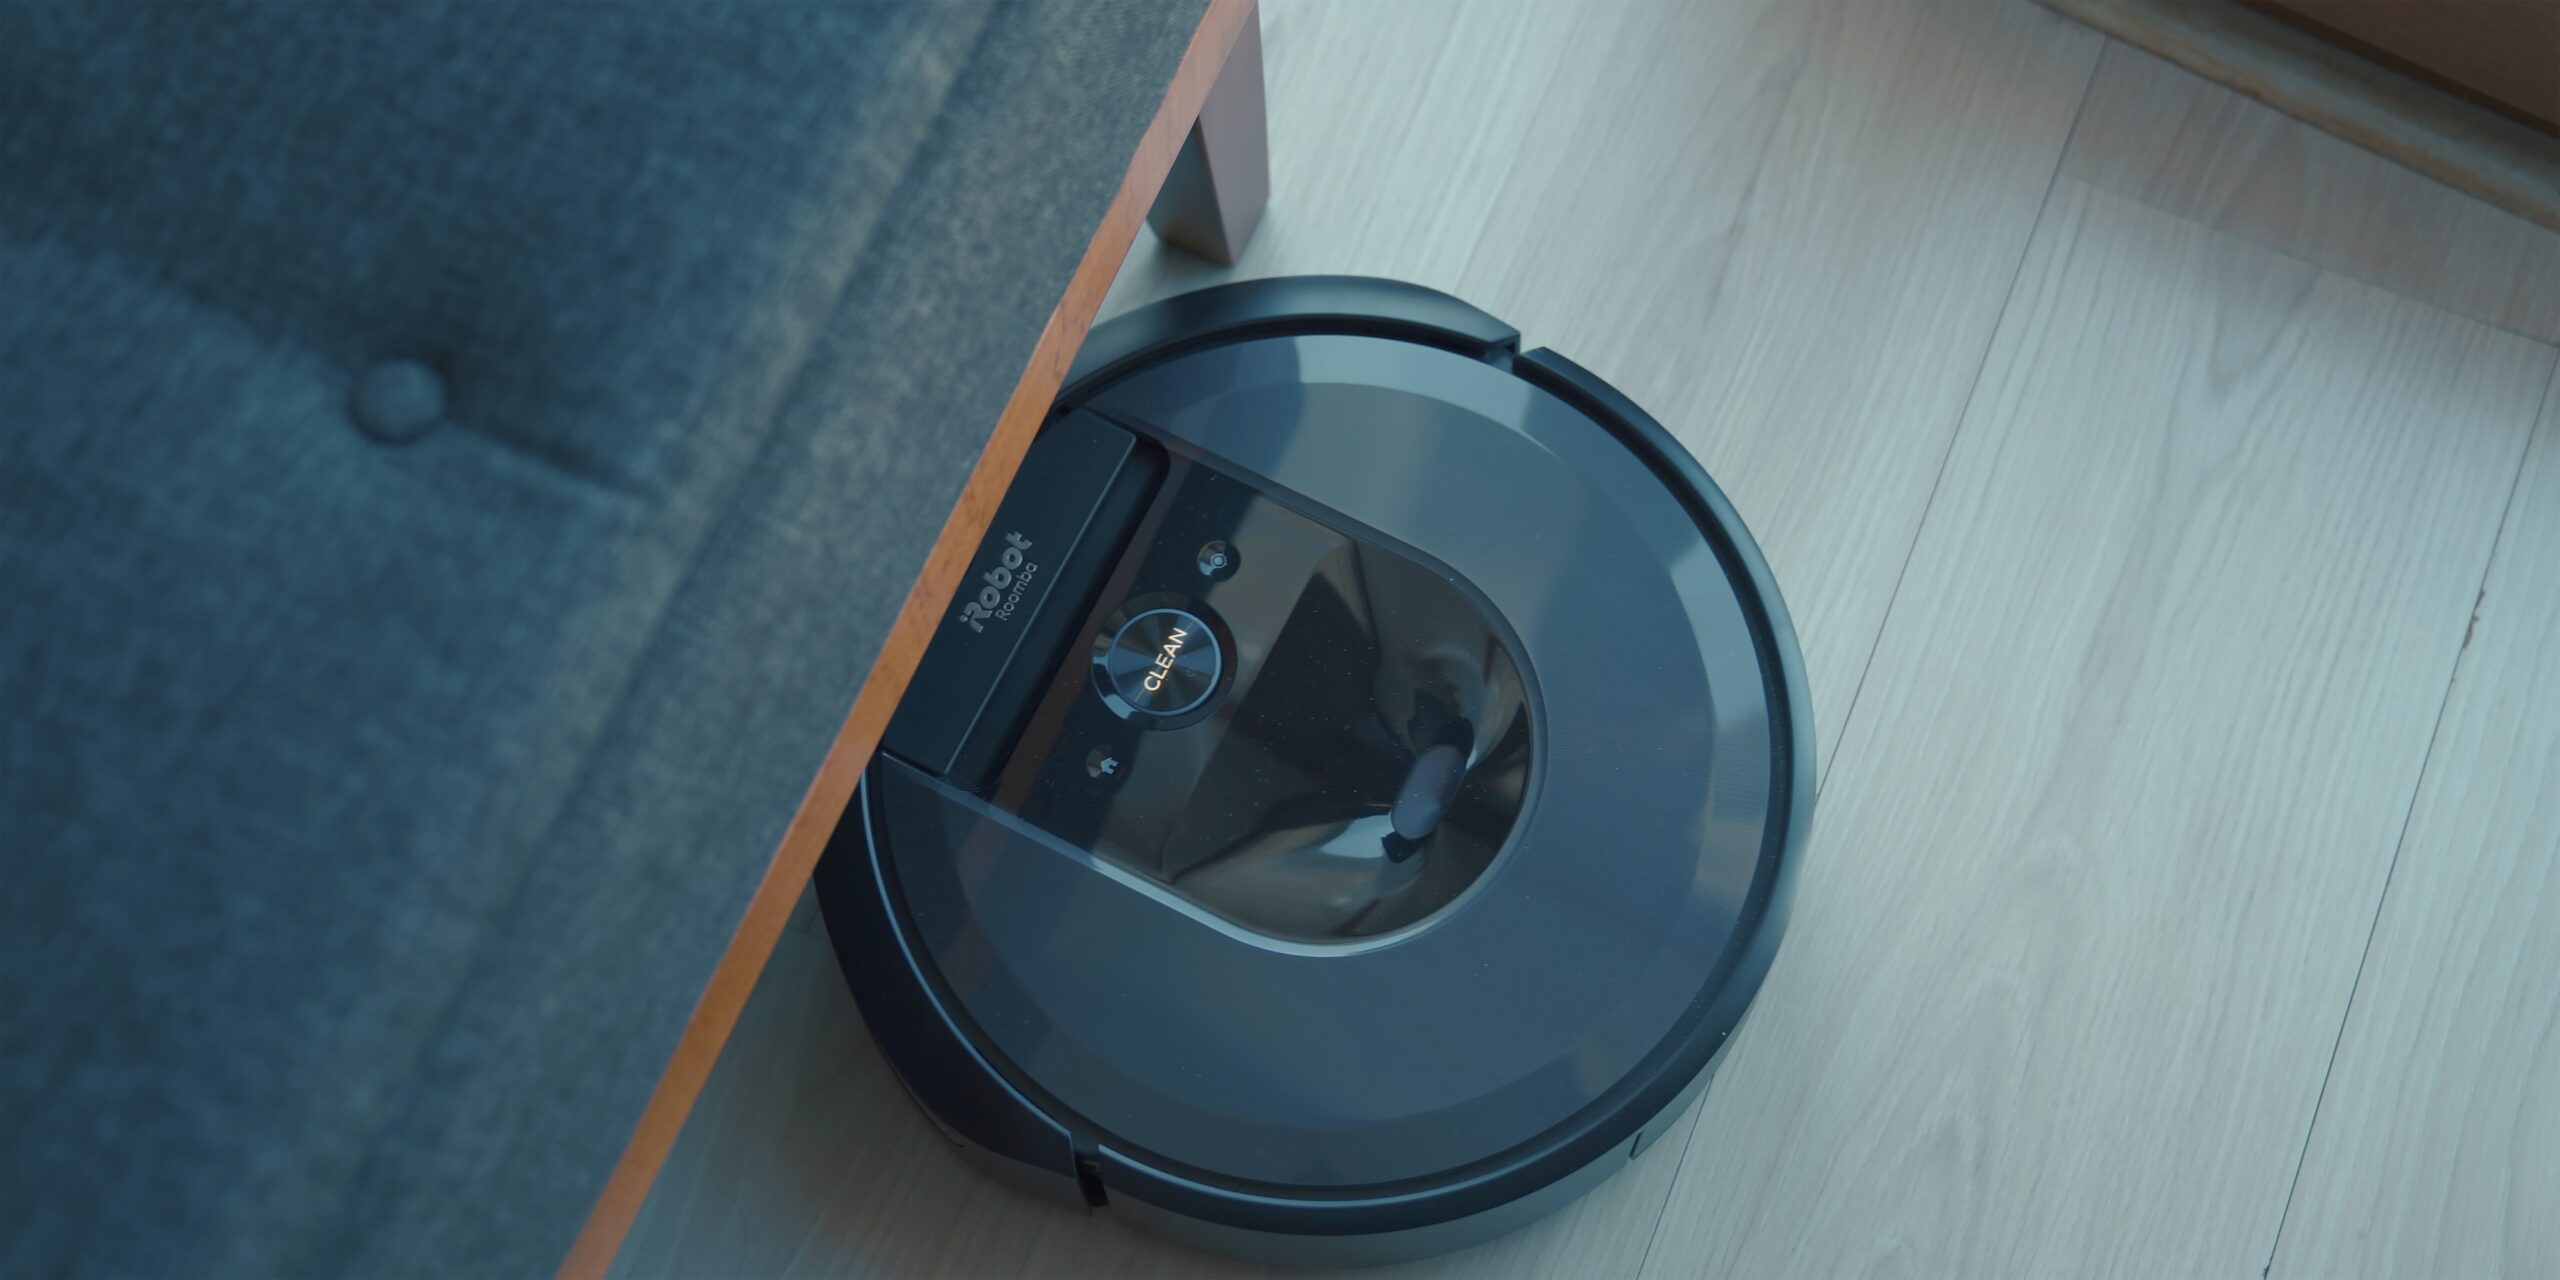 Amazon est sous enquête pour l'acquisition de la société Roomba iRobot, ce qui pourrait conduire à une domination d'Amazon sur le marché de la maison intelligente et entraver la concurrence. Les autorités compétentes enquêtent sur cette acquisition qui pourrait avoir des conséquences sur le marché de la maison intelligente.